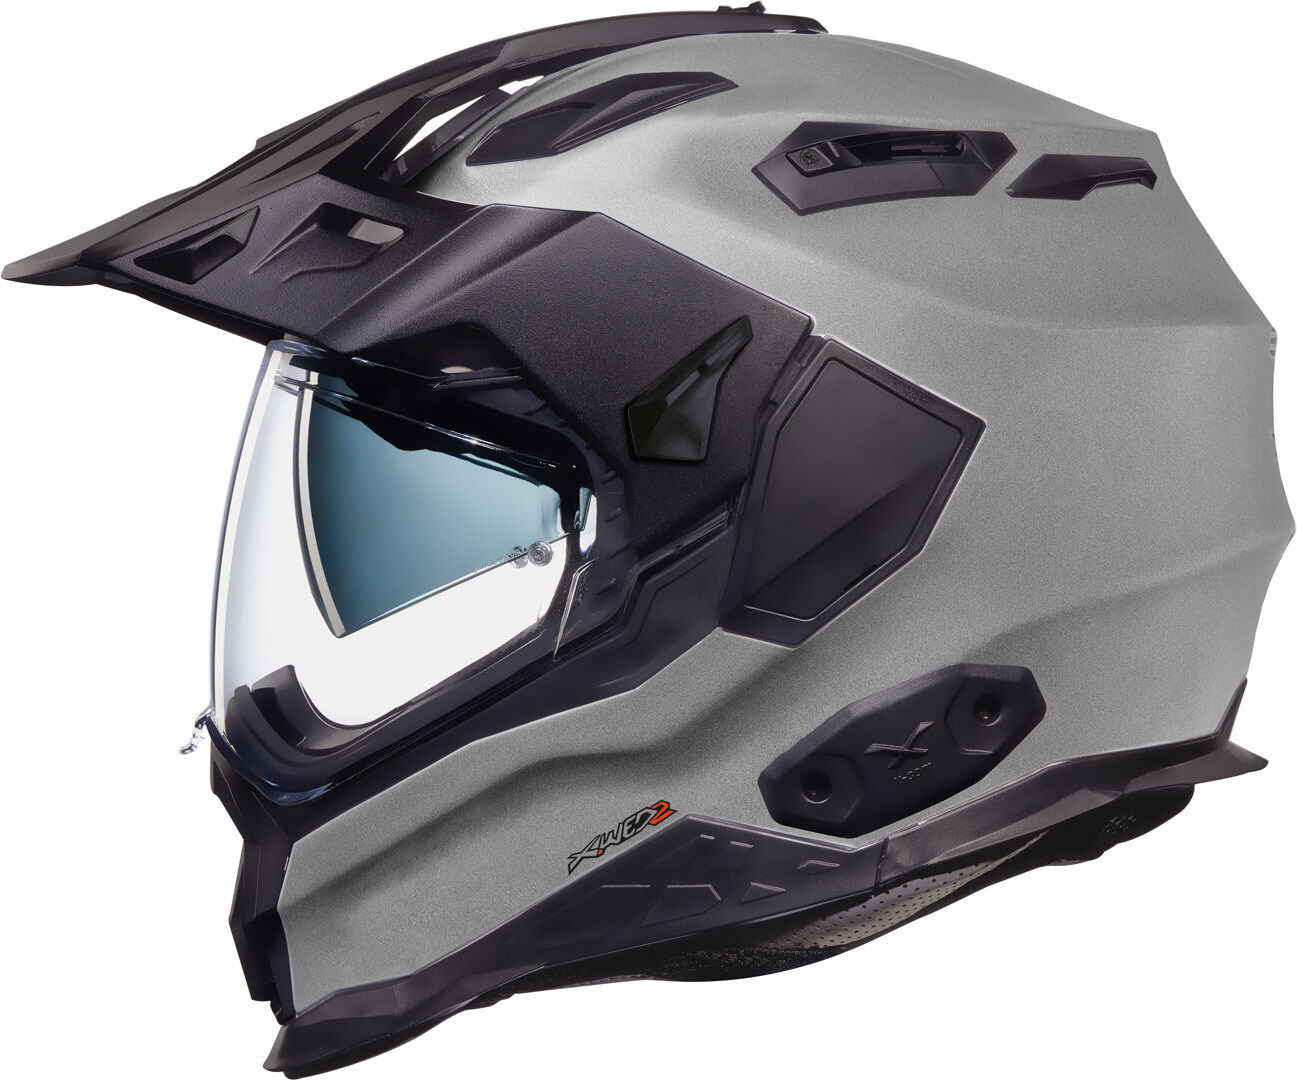 NEXX X.WED 2 Plain casco - Plata (XL)